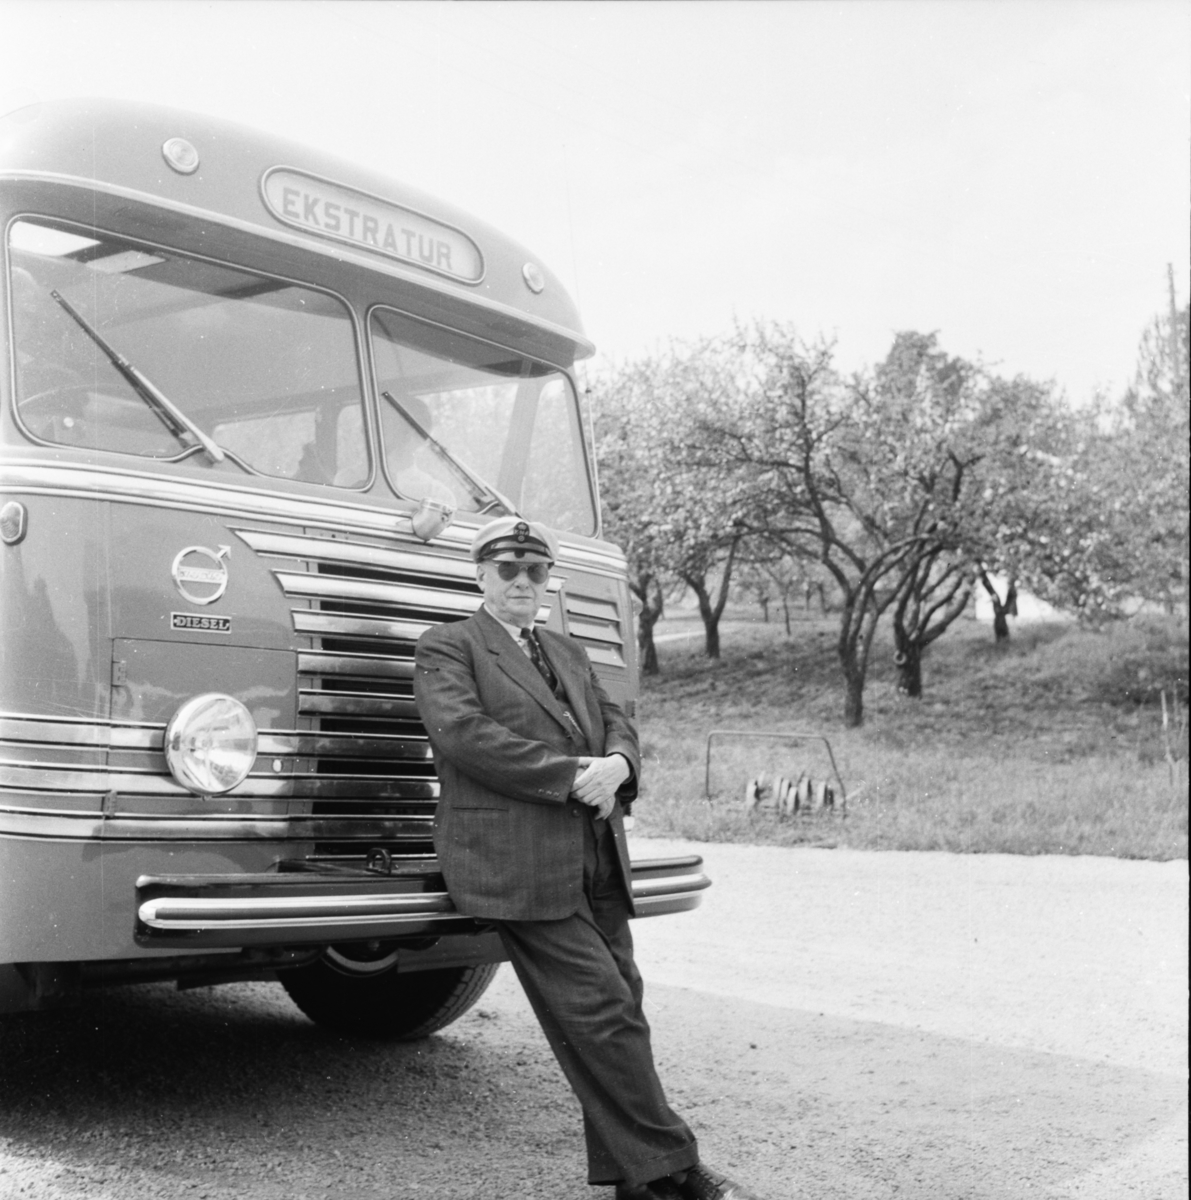 Vardens arkiv. "Ødegårdens nye kontinentalbuss"  30.05.1954

Bussen har skiltnummer H-2426. Teksten "Volvo-diesel" står skrevet over lykta